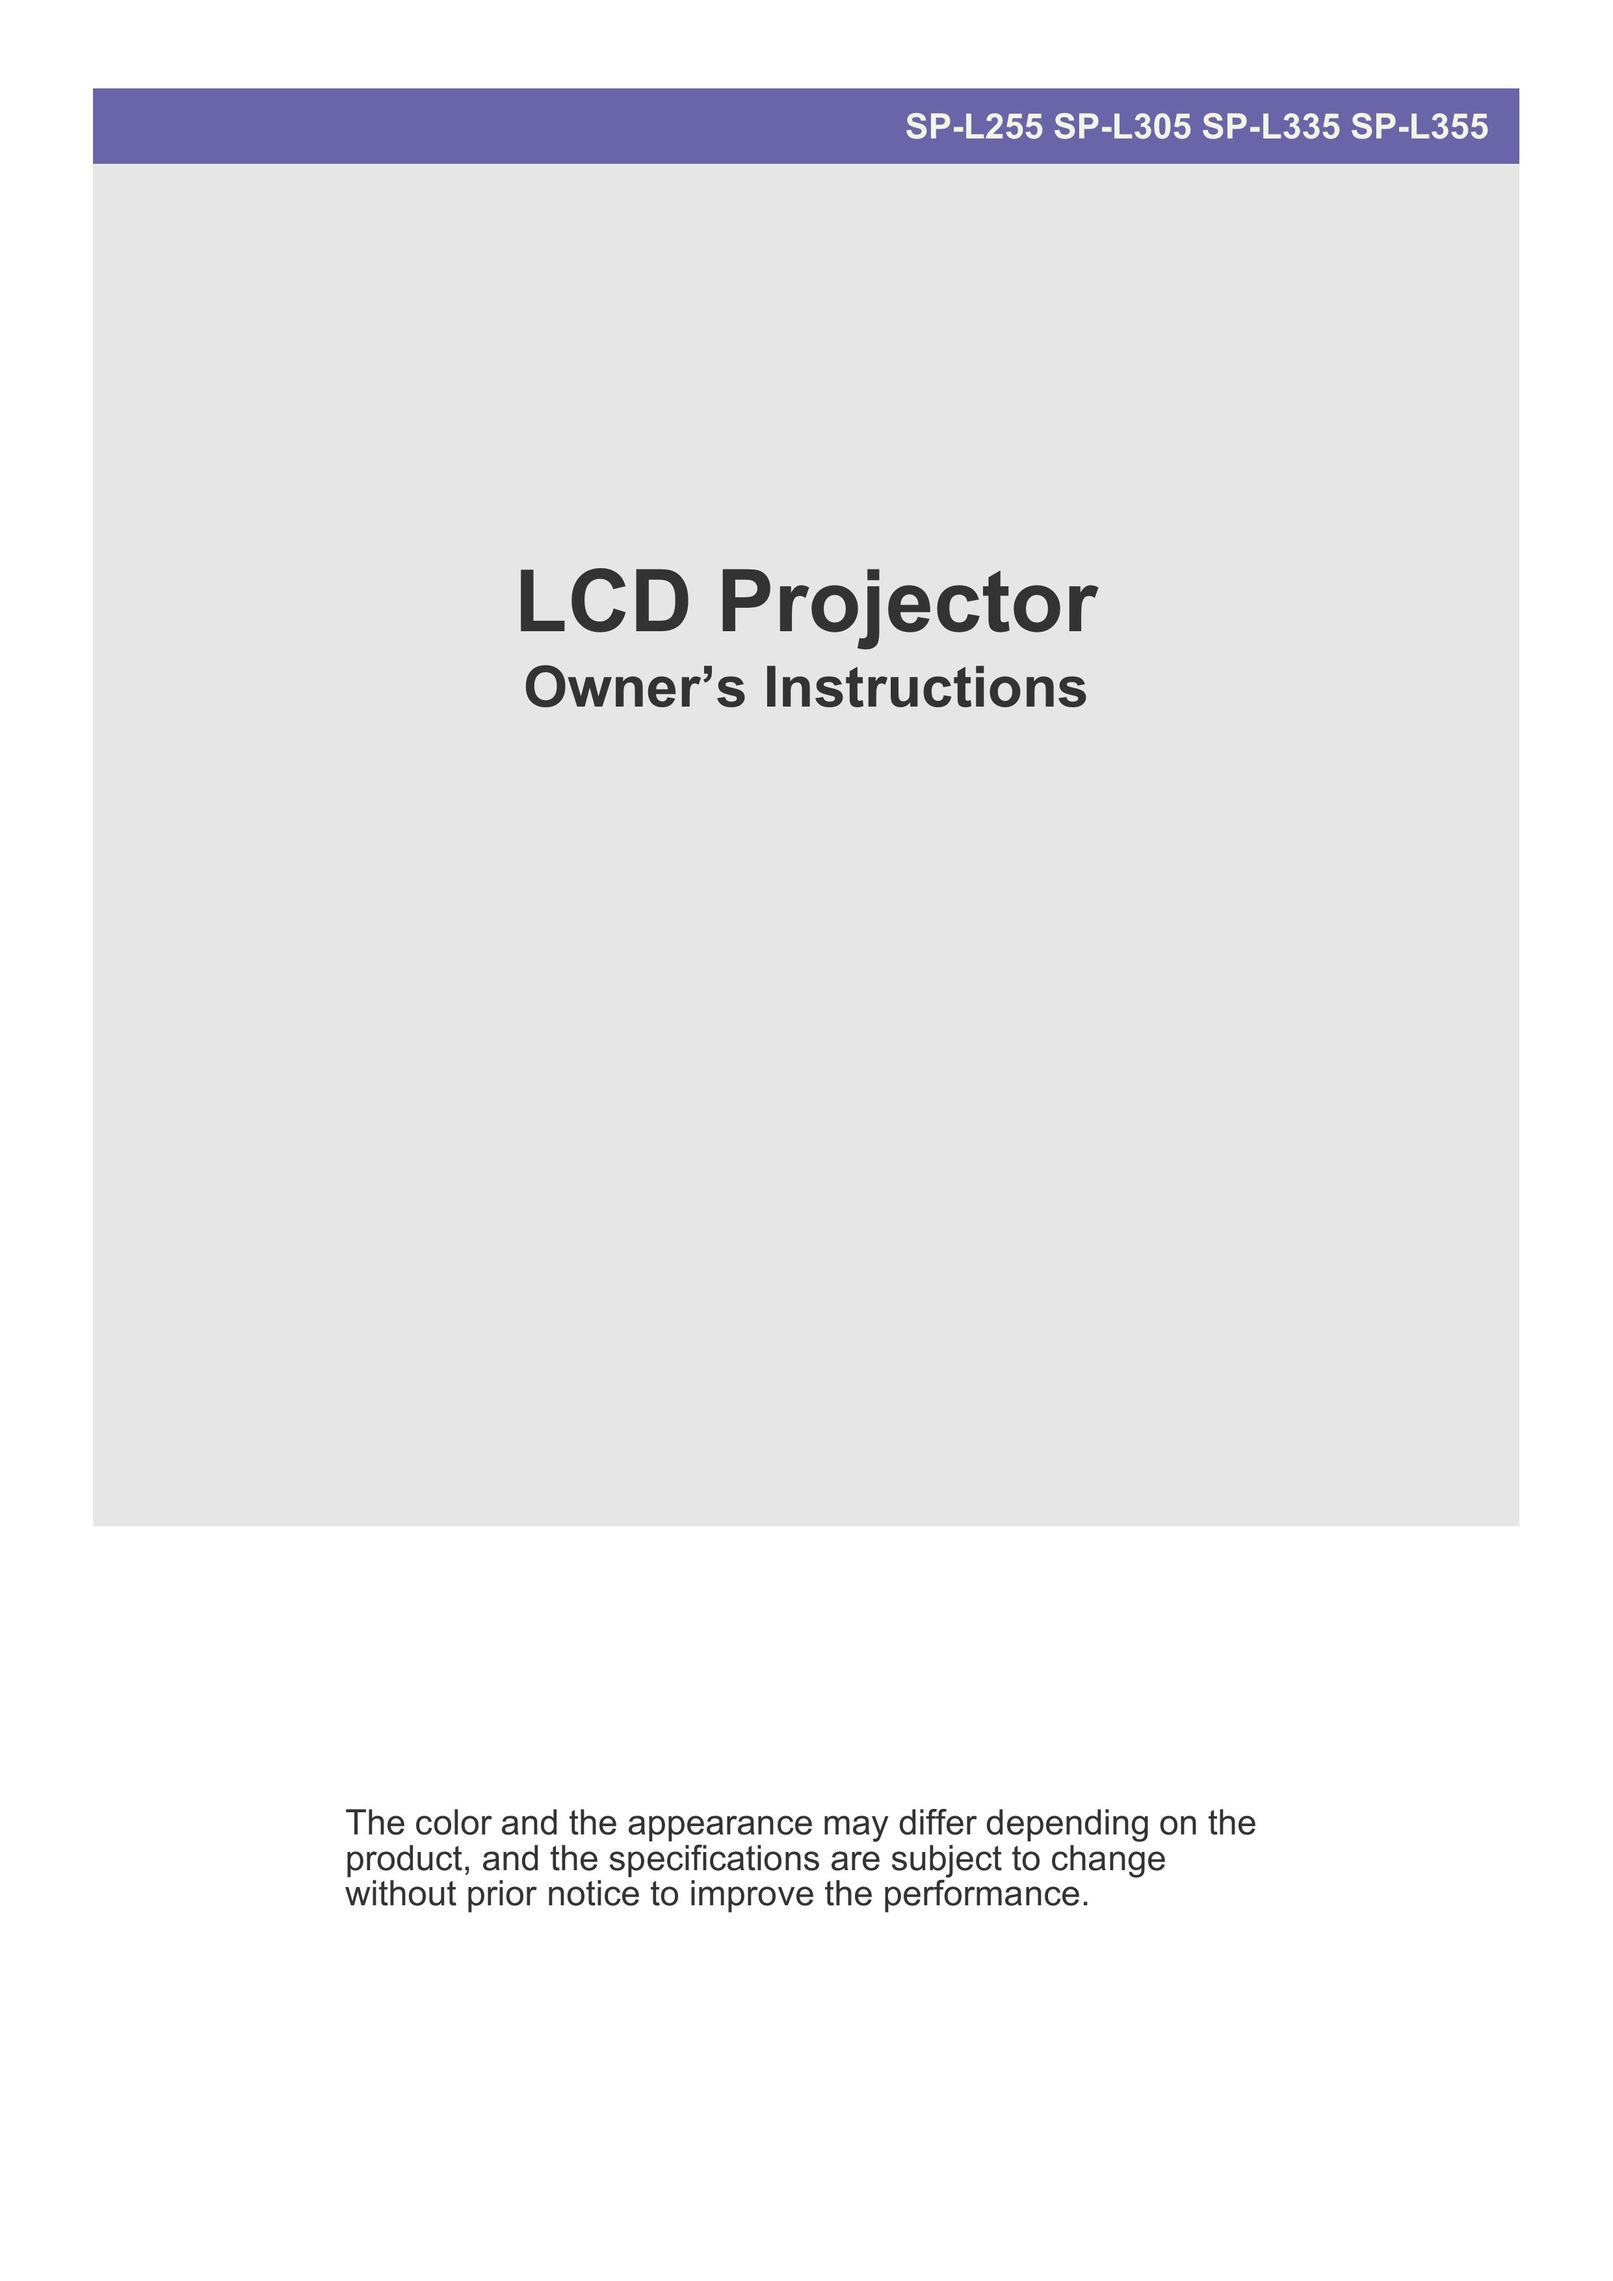 Samsung SP-L355 Projector User Manual